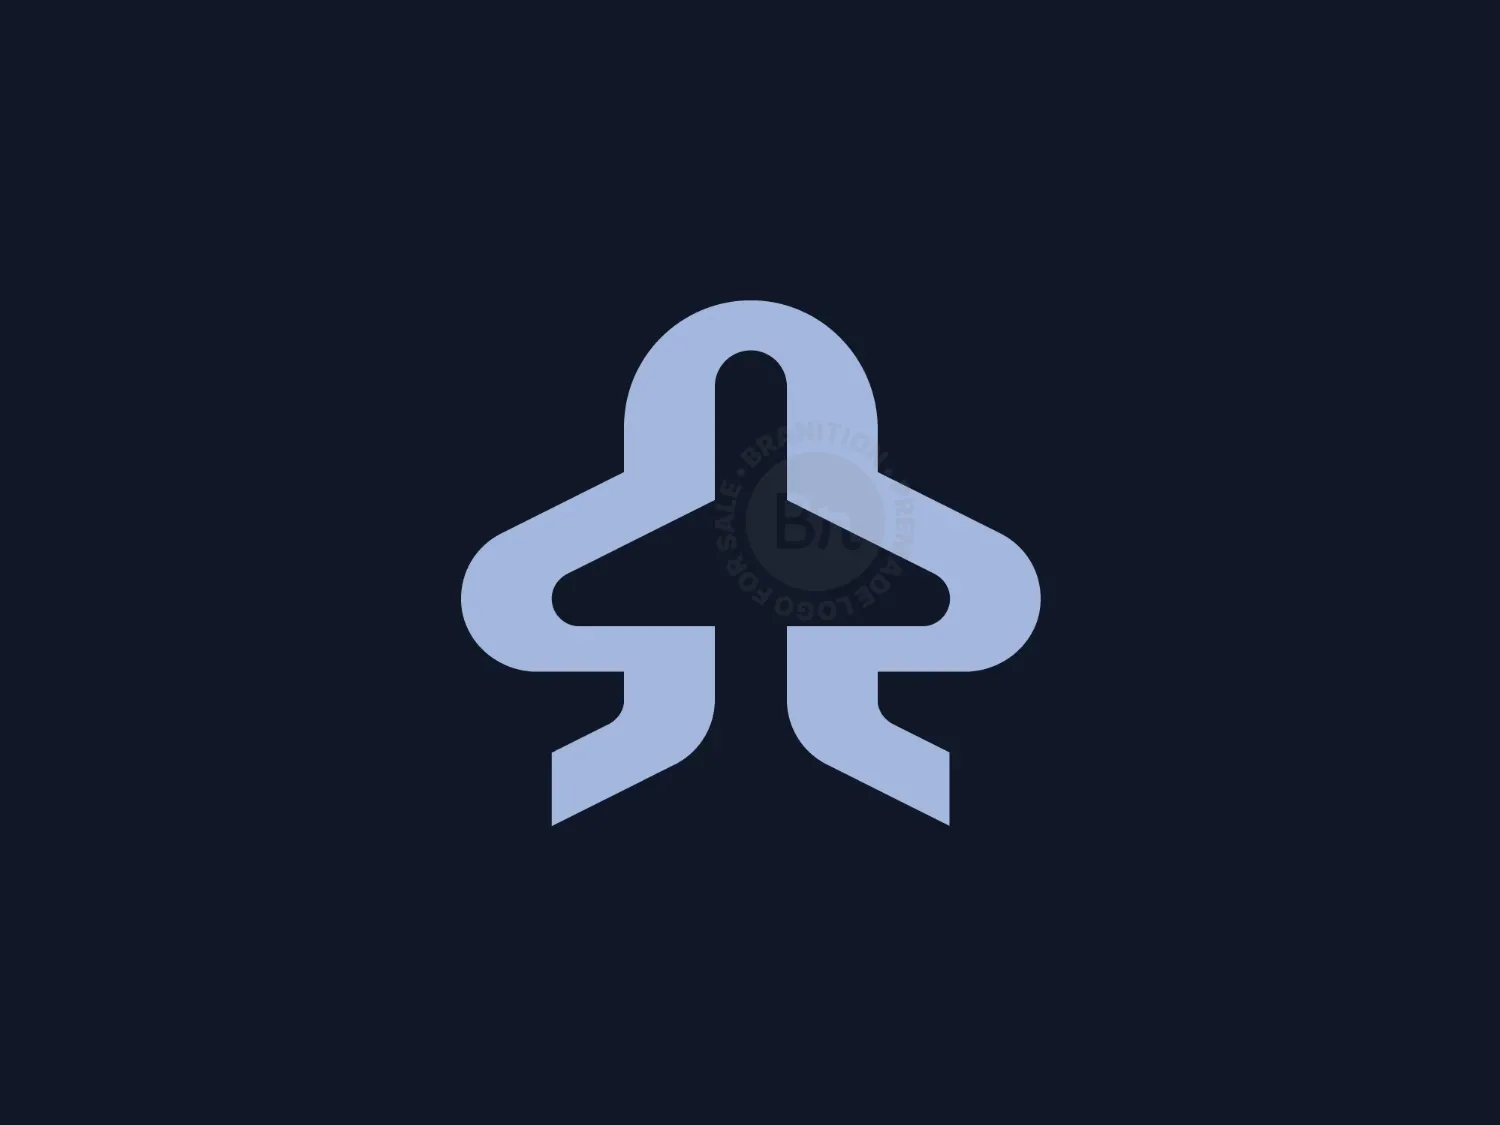 Stylish S Plane Logo